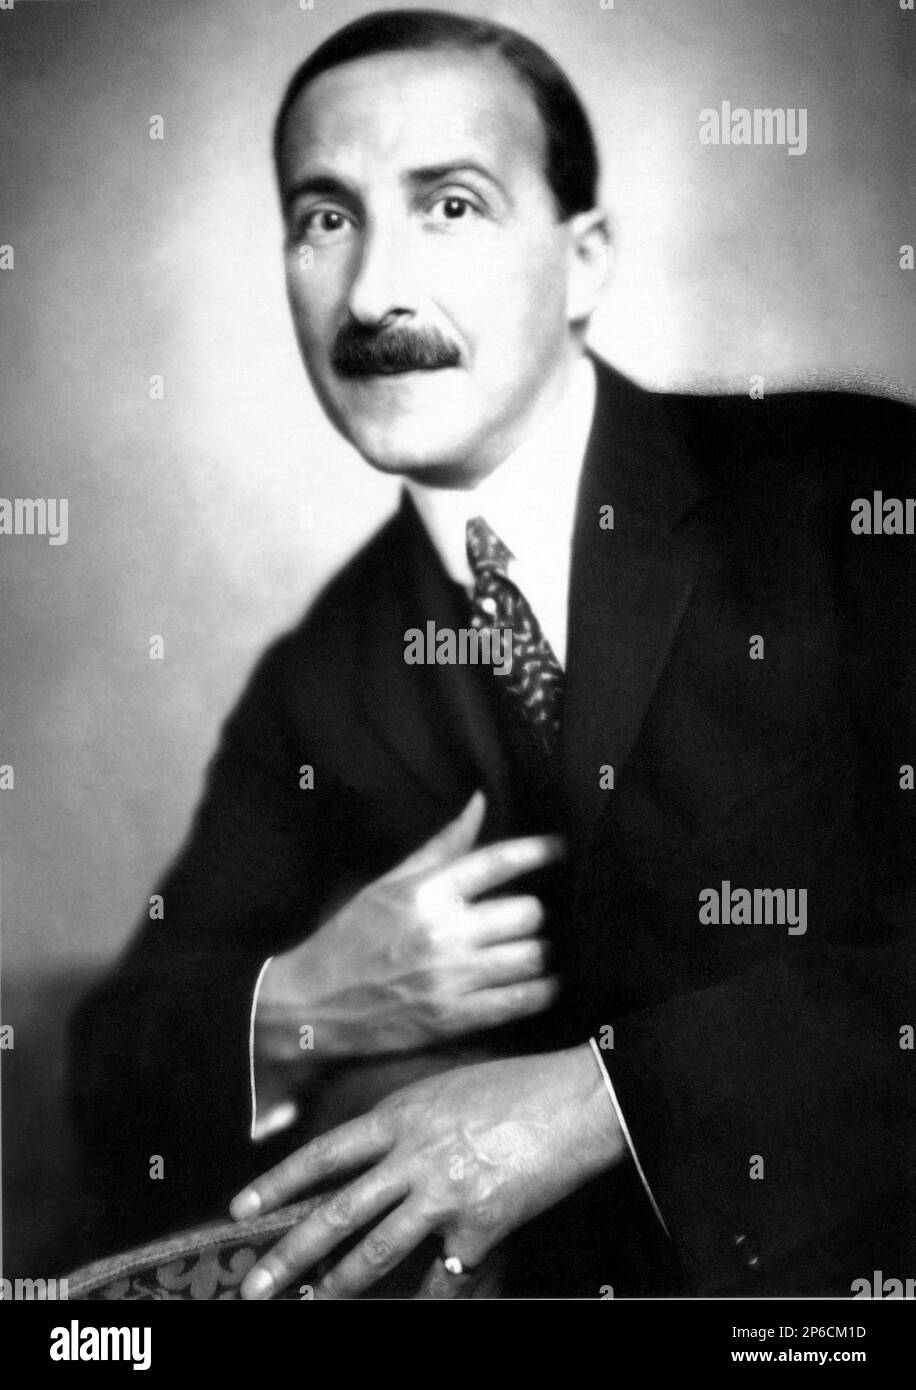 1936 , London , GREAT BRITAIN : The austrian writer STEFAN ZWEIG  ( 1881 - 1942 ).  - LETTERATO - SCRITTORE - LETTERATURA - Literature - baffi - moustache - cravatta  - tie   ----  Archivio GBB Stock Photo